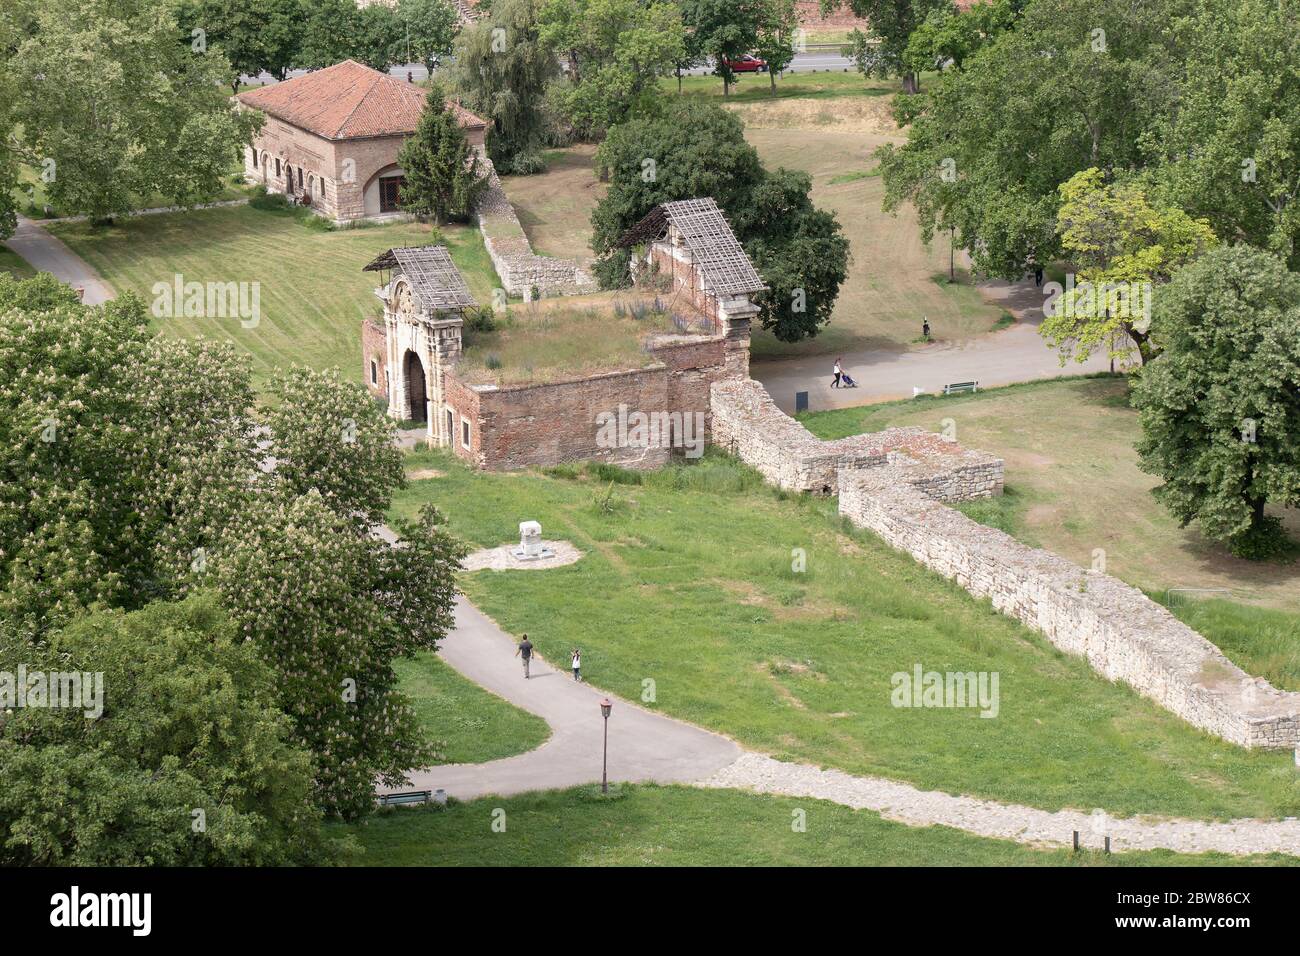 Belgrado, Serbia - 12 de mayo de 2020: Kalemegdan parque, su ciudad baja con ruinas de la época romana y medieval, y restos de la puerta de Carlos VI, a partir de 1736, Foto de stock